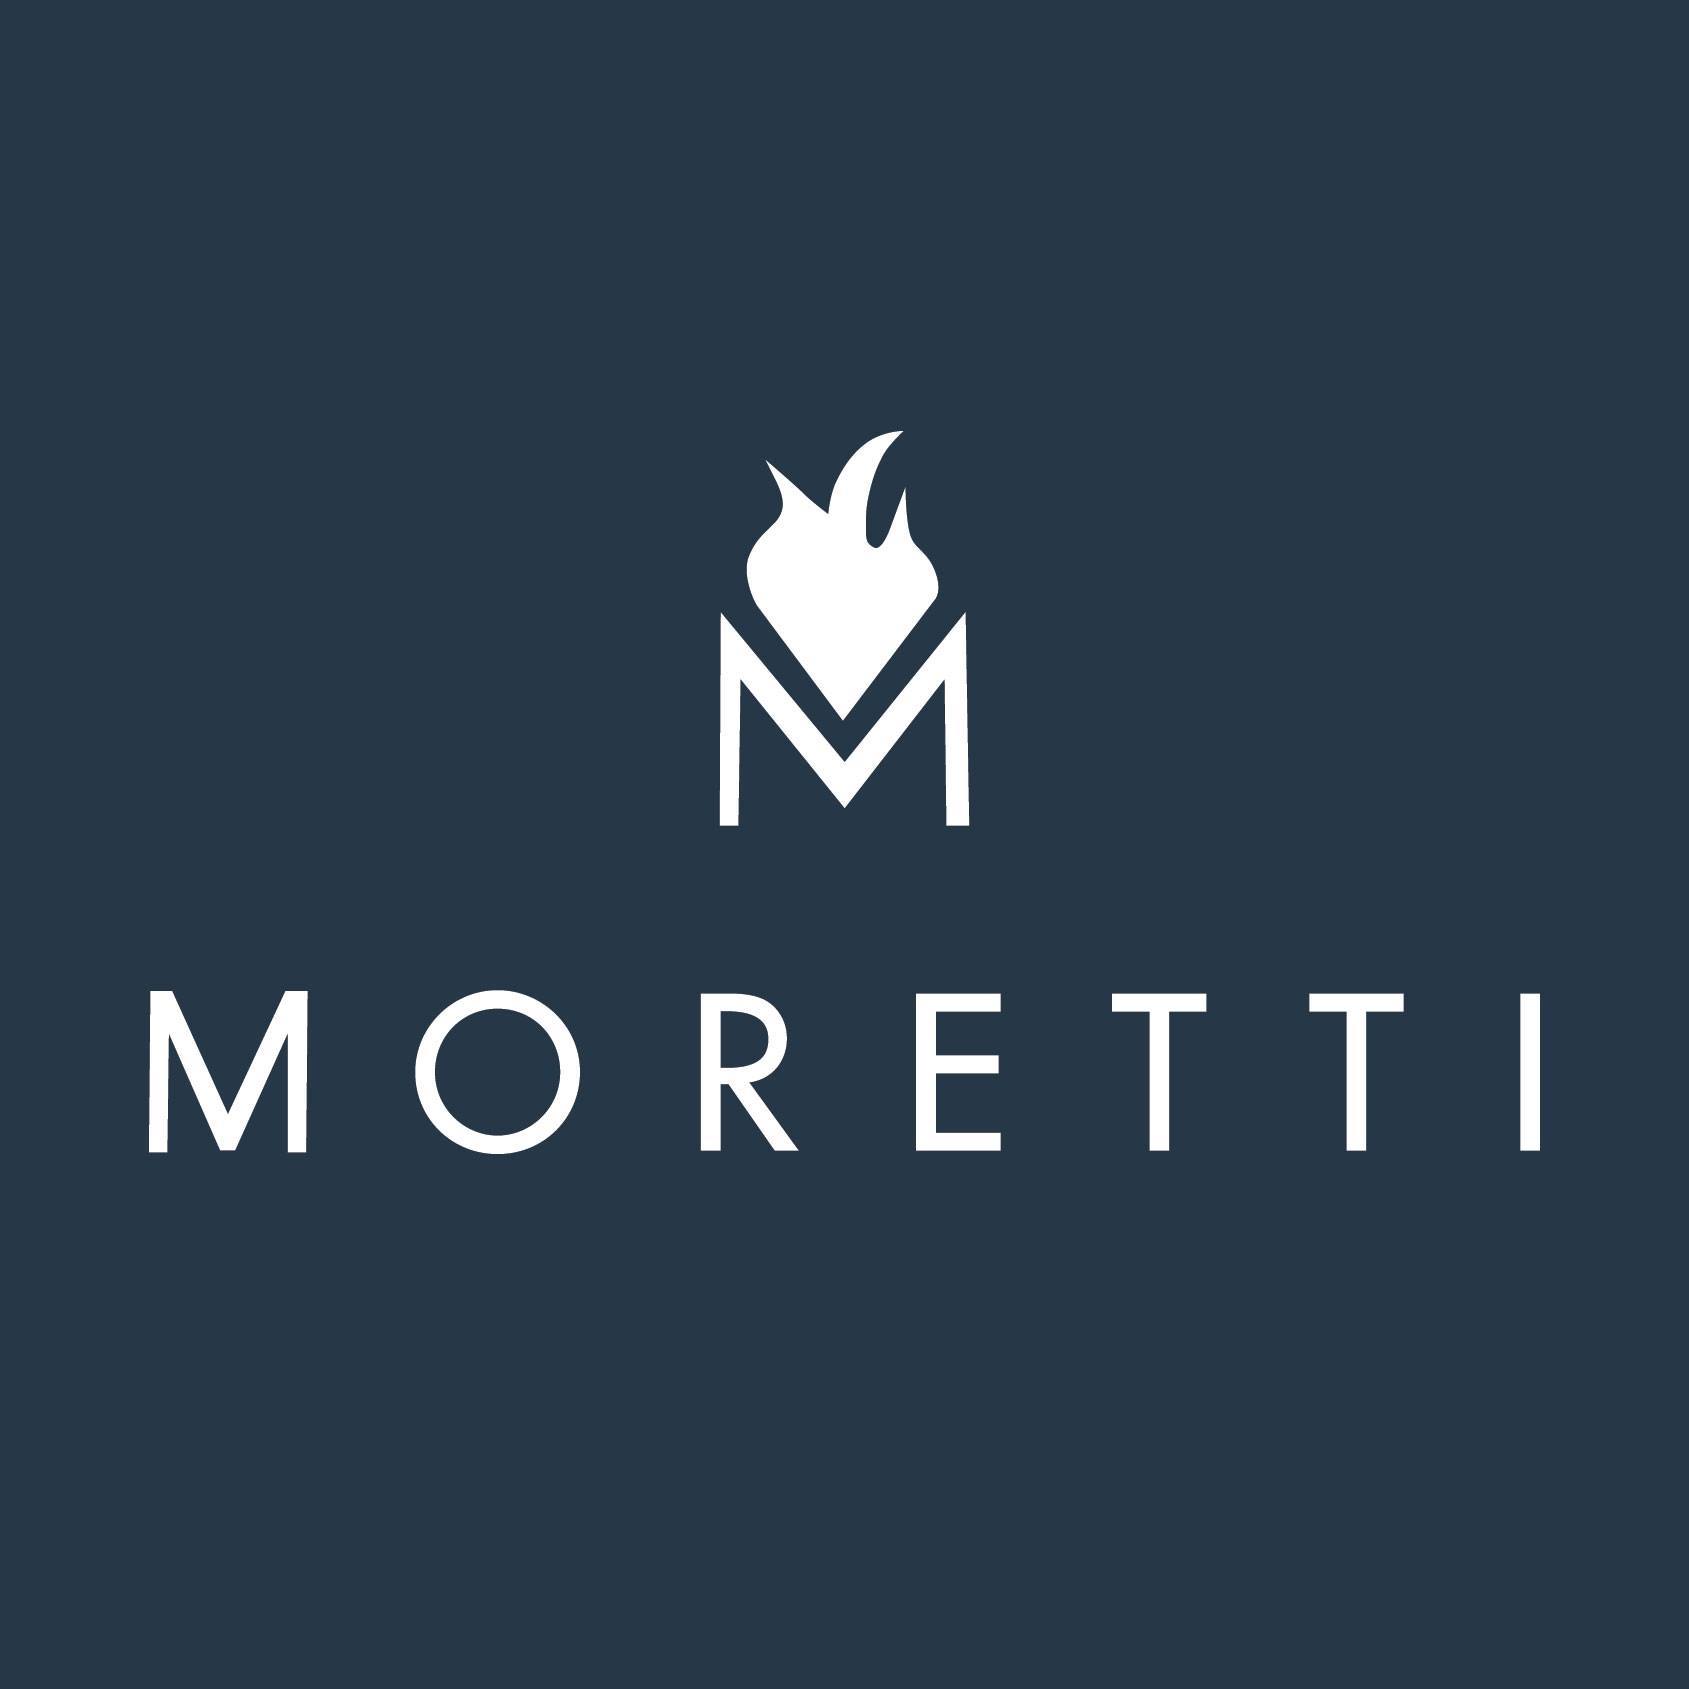 Company logo of Moretti